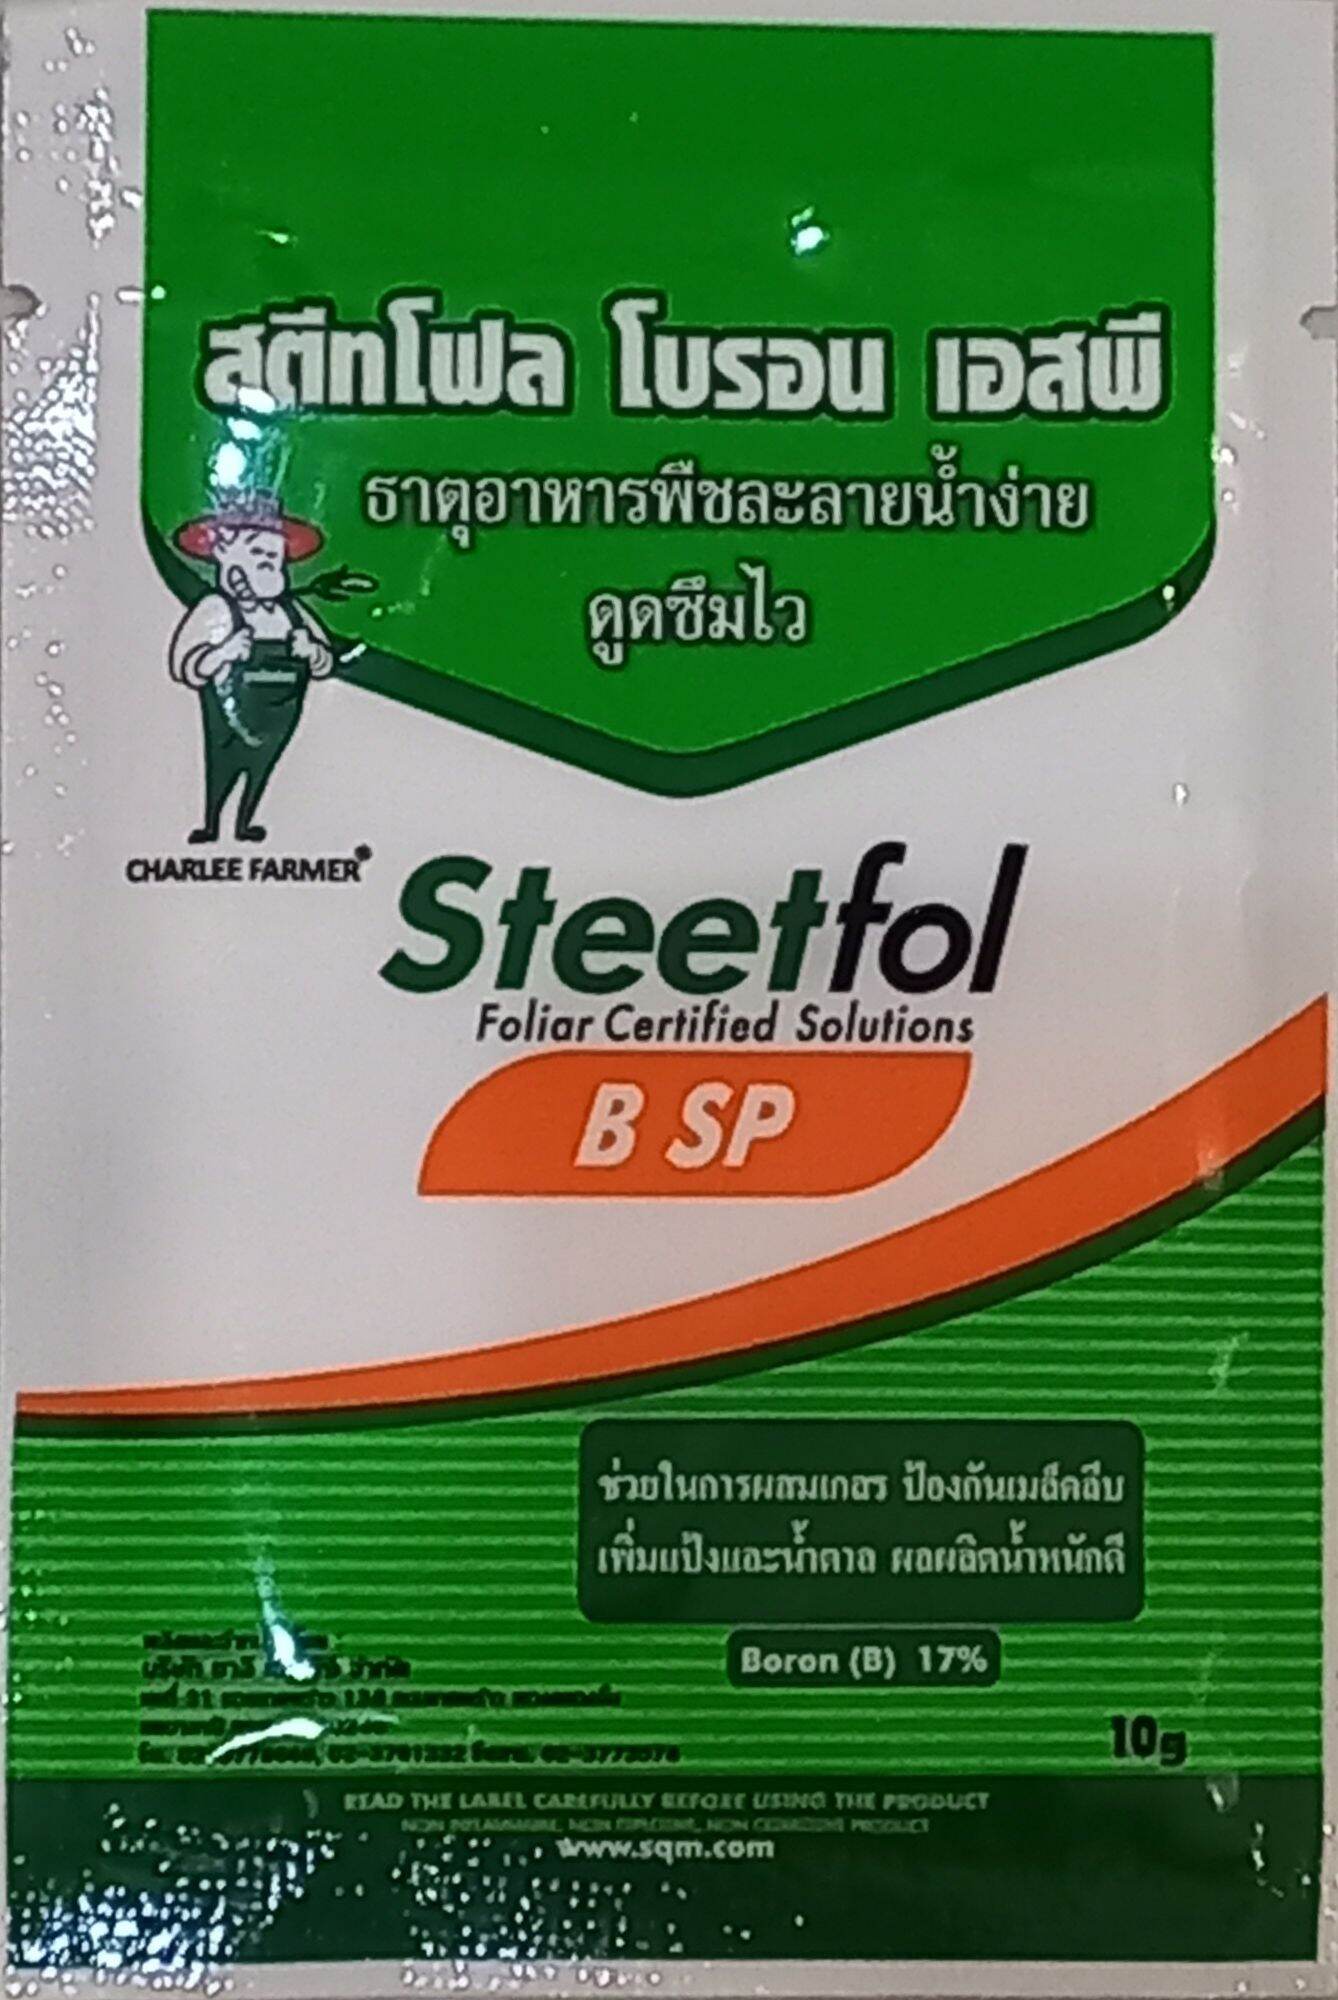 Steetfol B SP (10 gam)